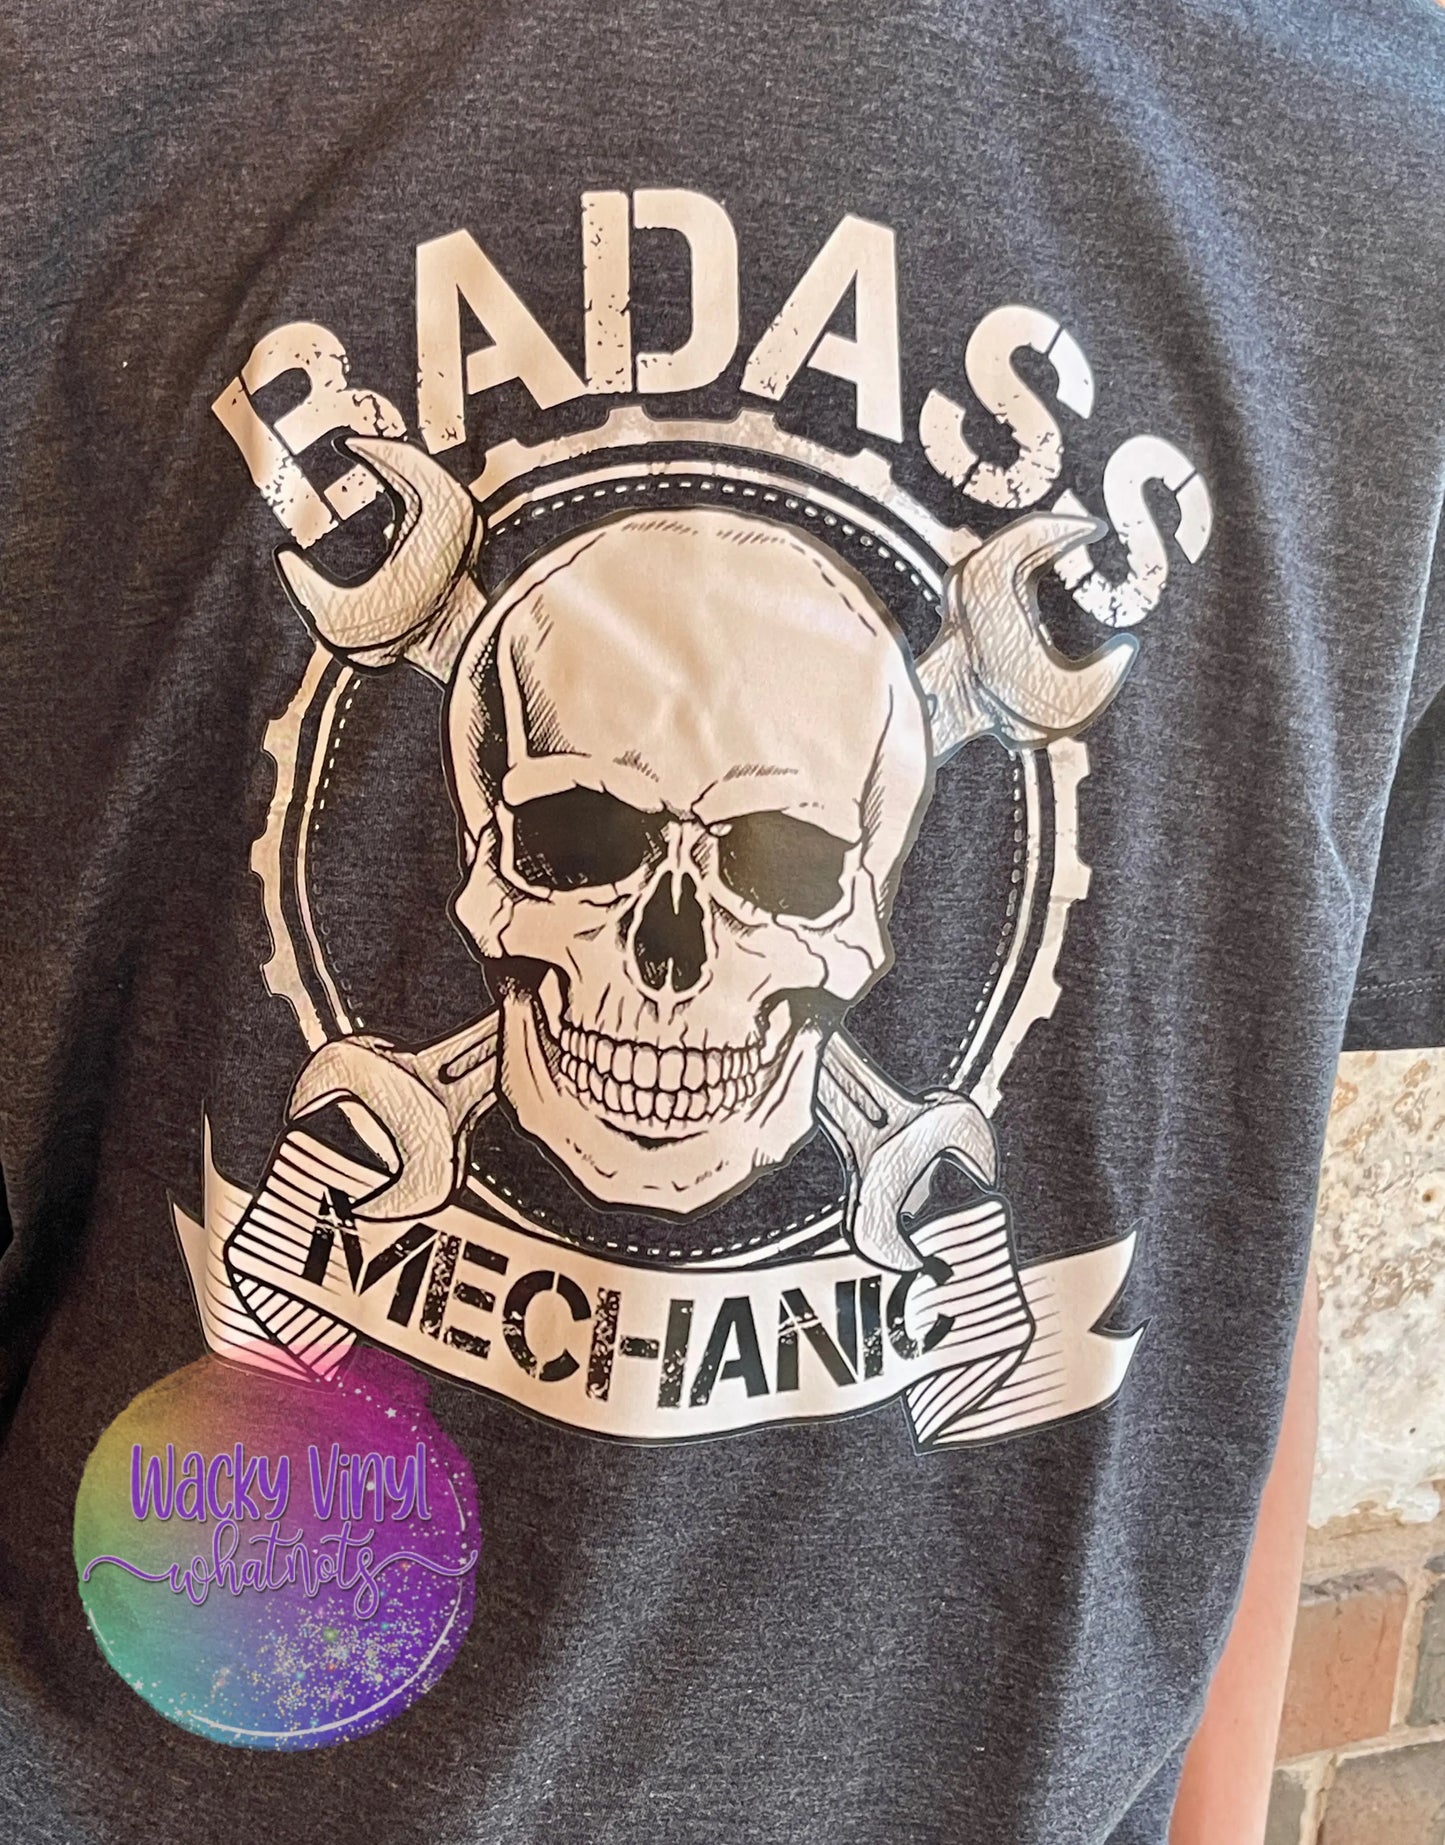 Badass Mechanic Skull Tee